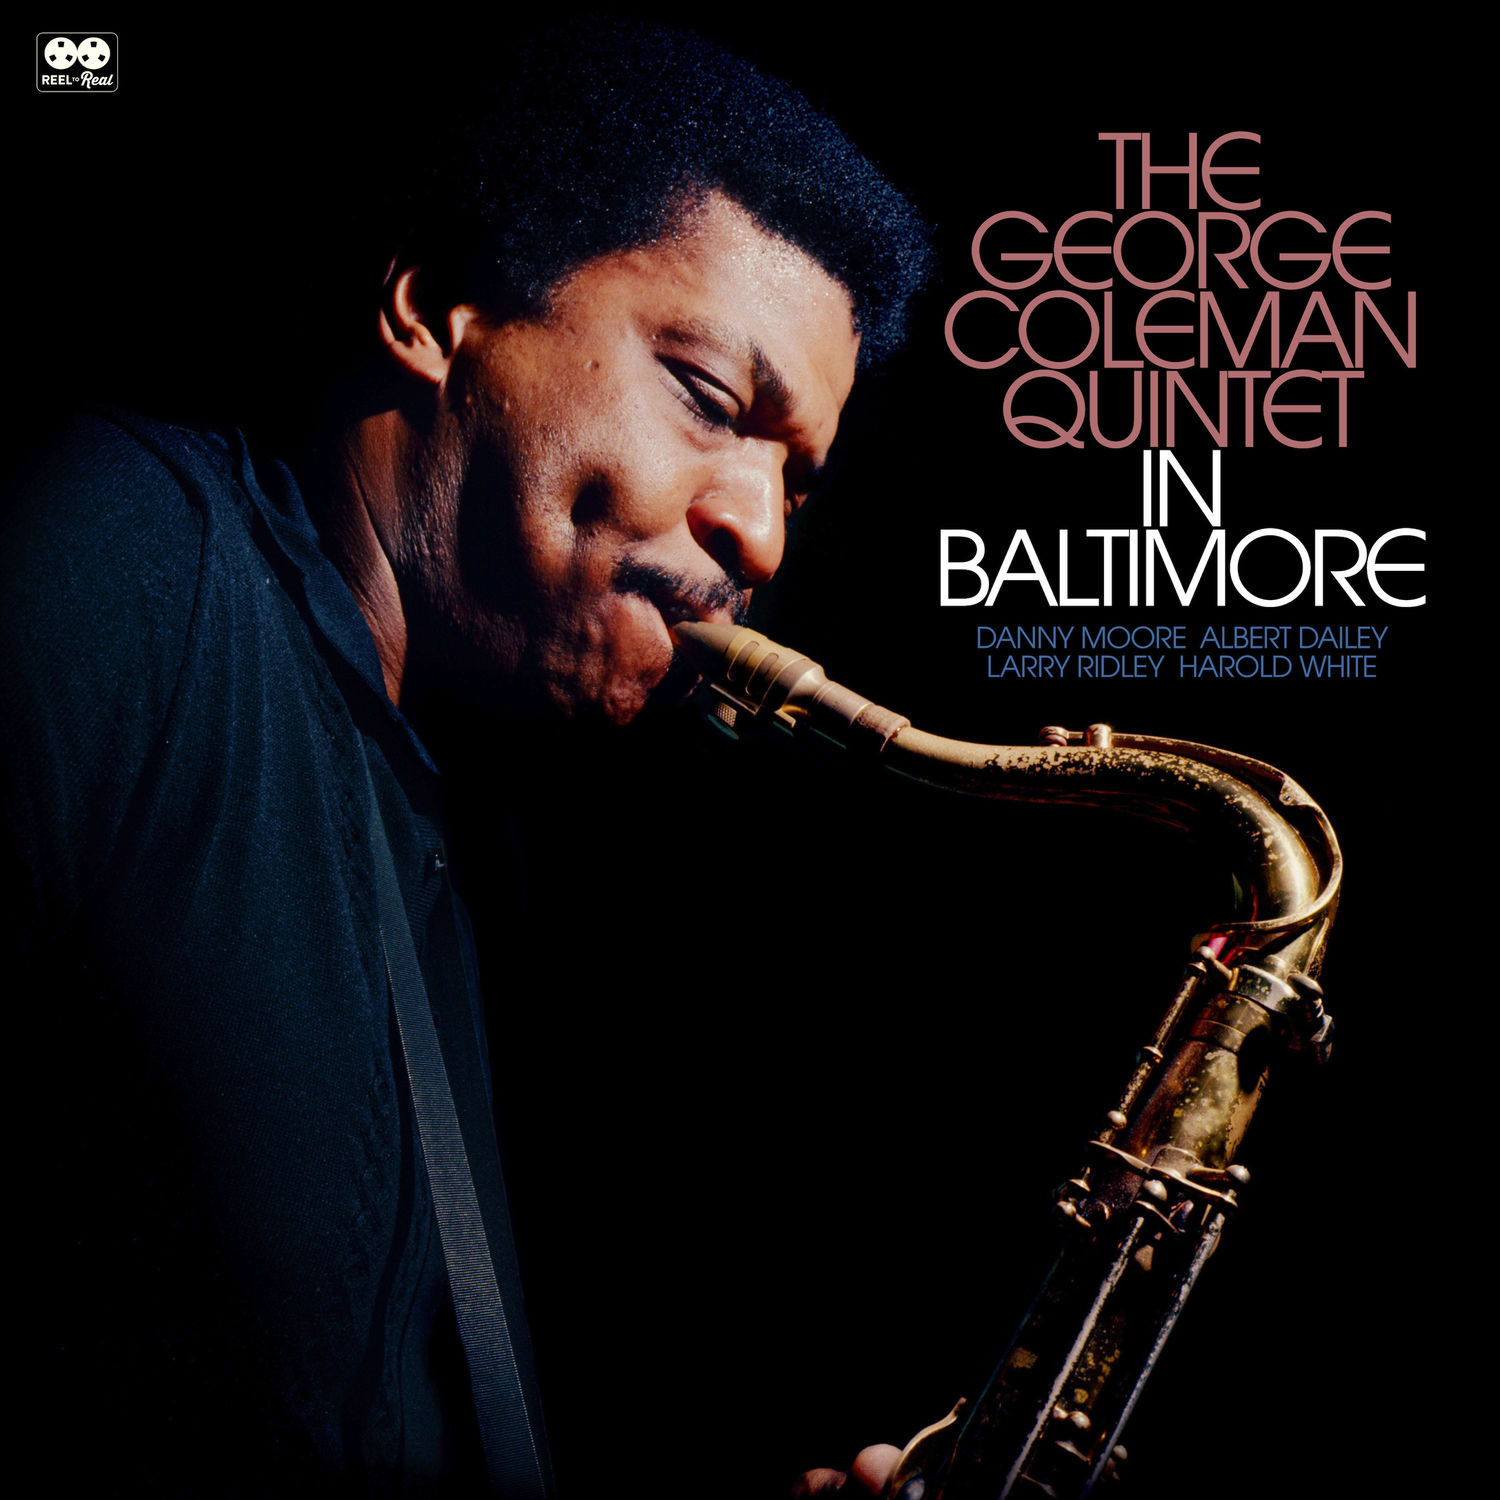 George Coleman Quintet - The George Colman Quintet in Baltimore (2020) [FLAC 24bit/96kHz]